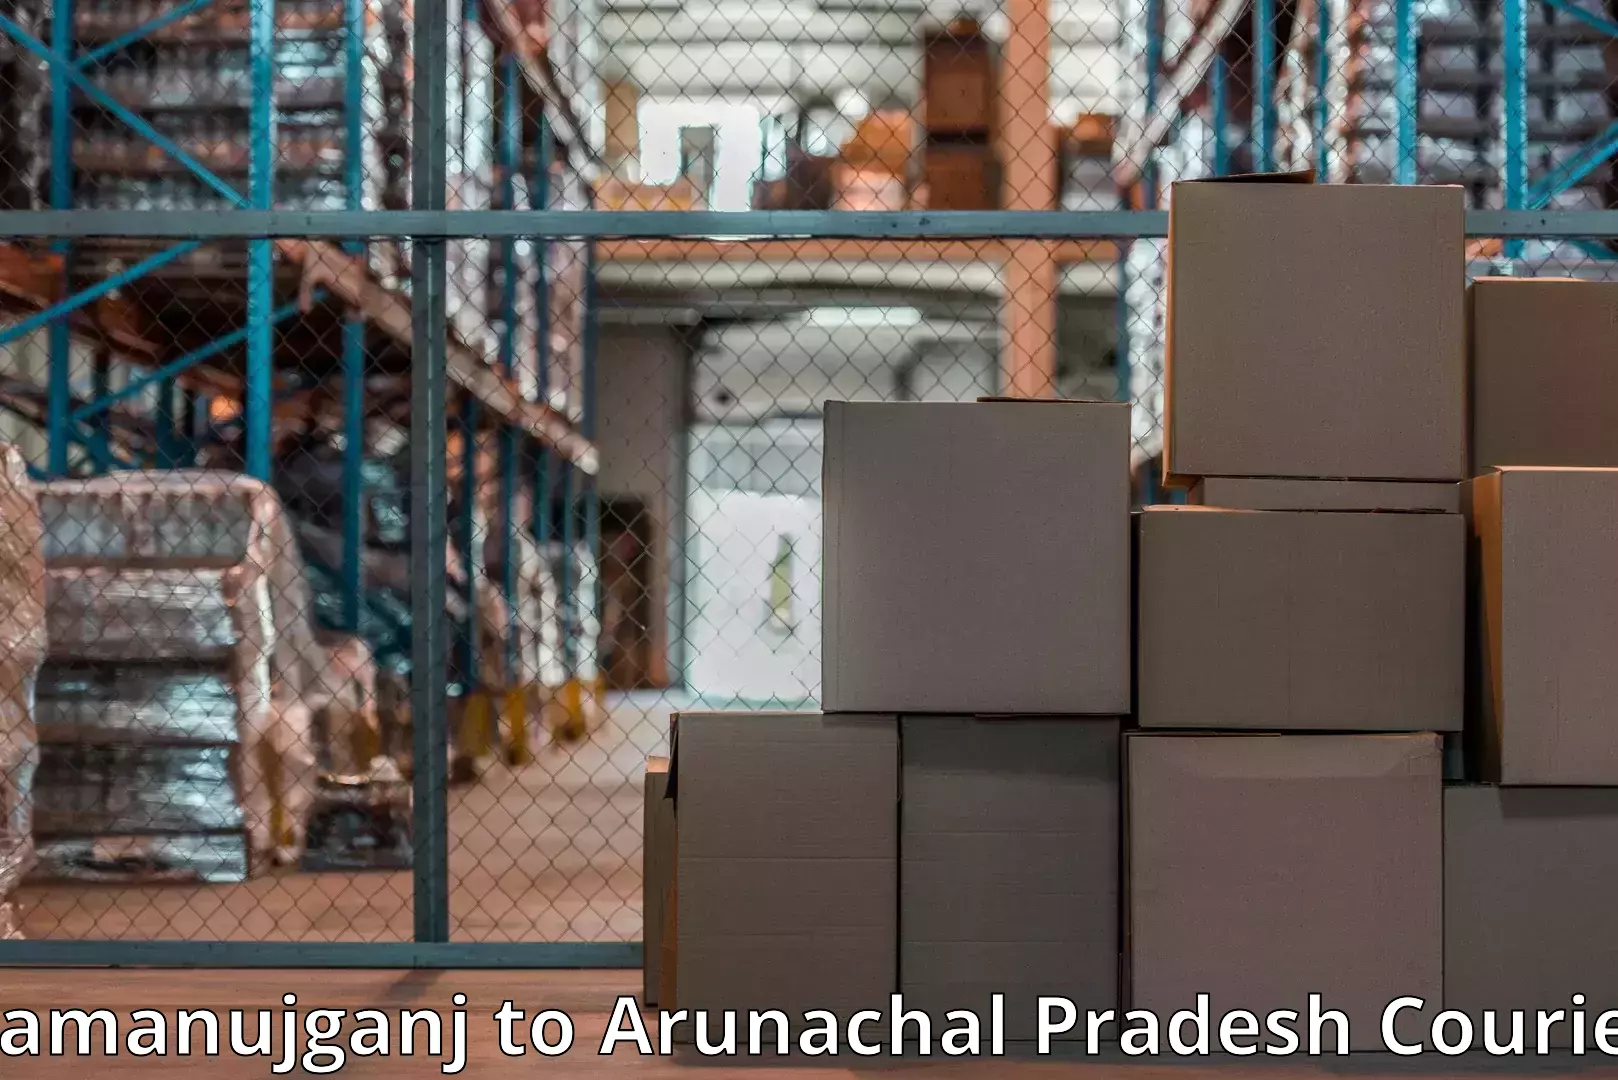 Furniture moving experts Ramanujganj to Lower Subansiri